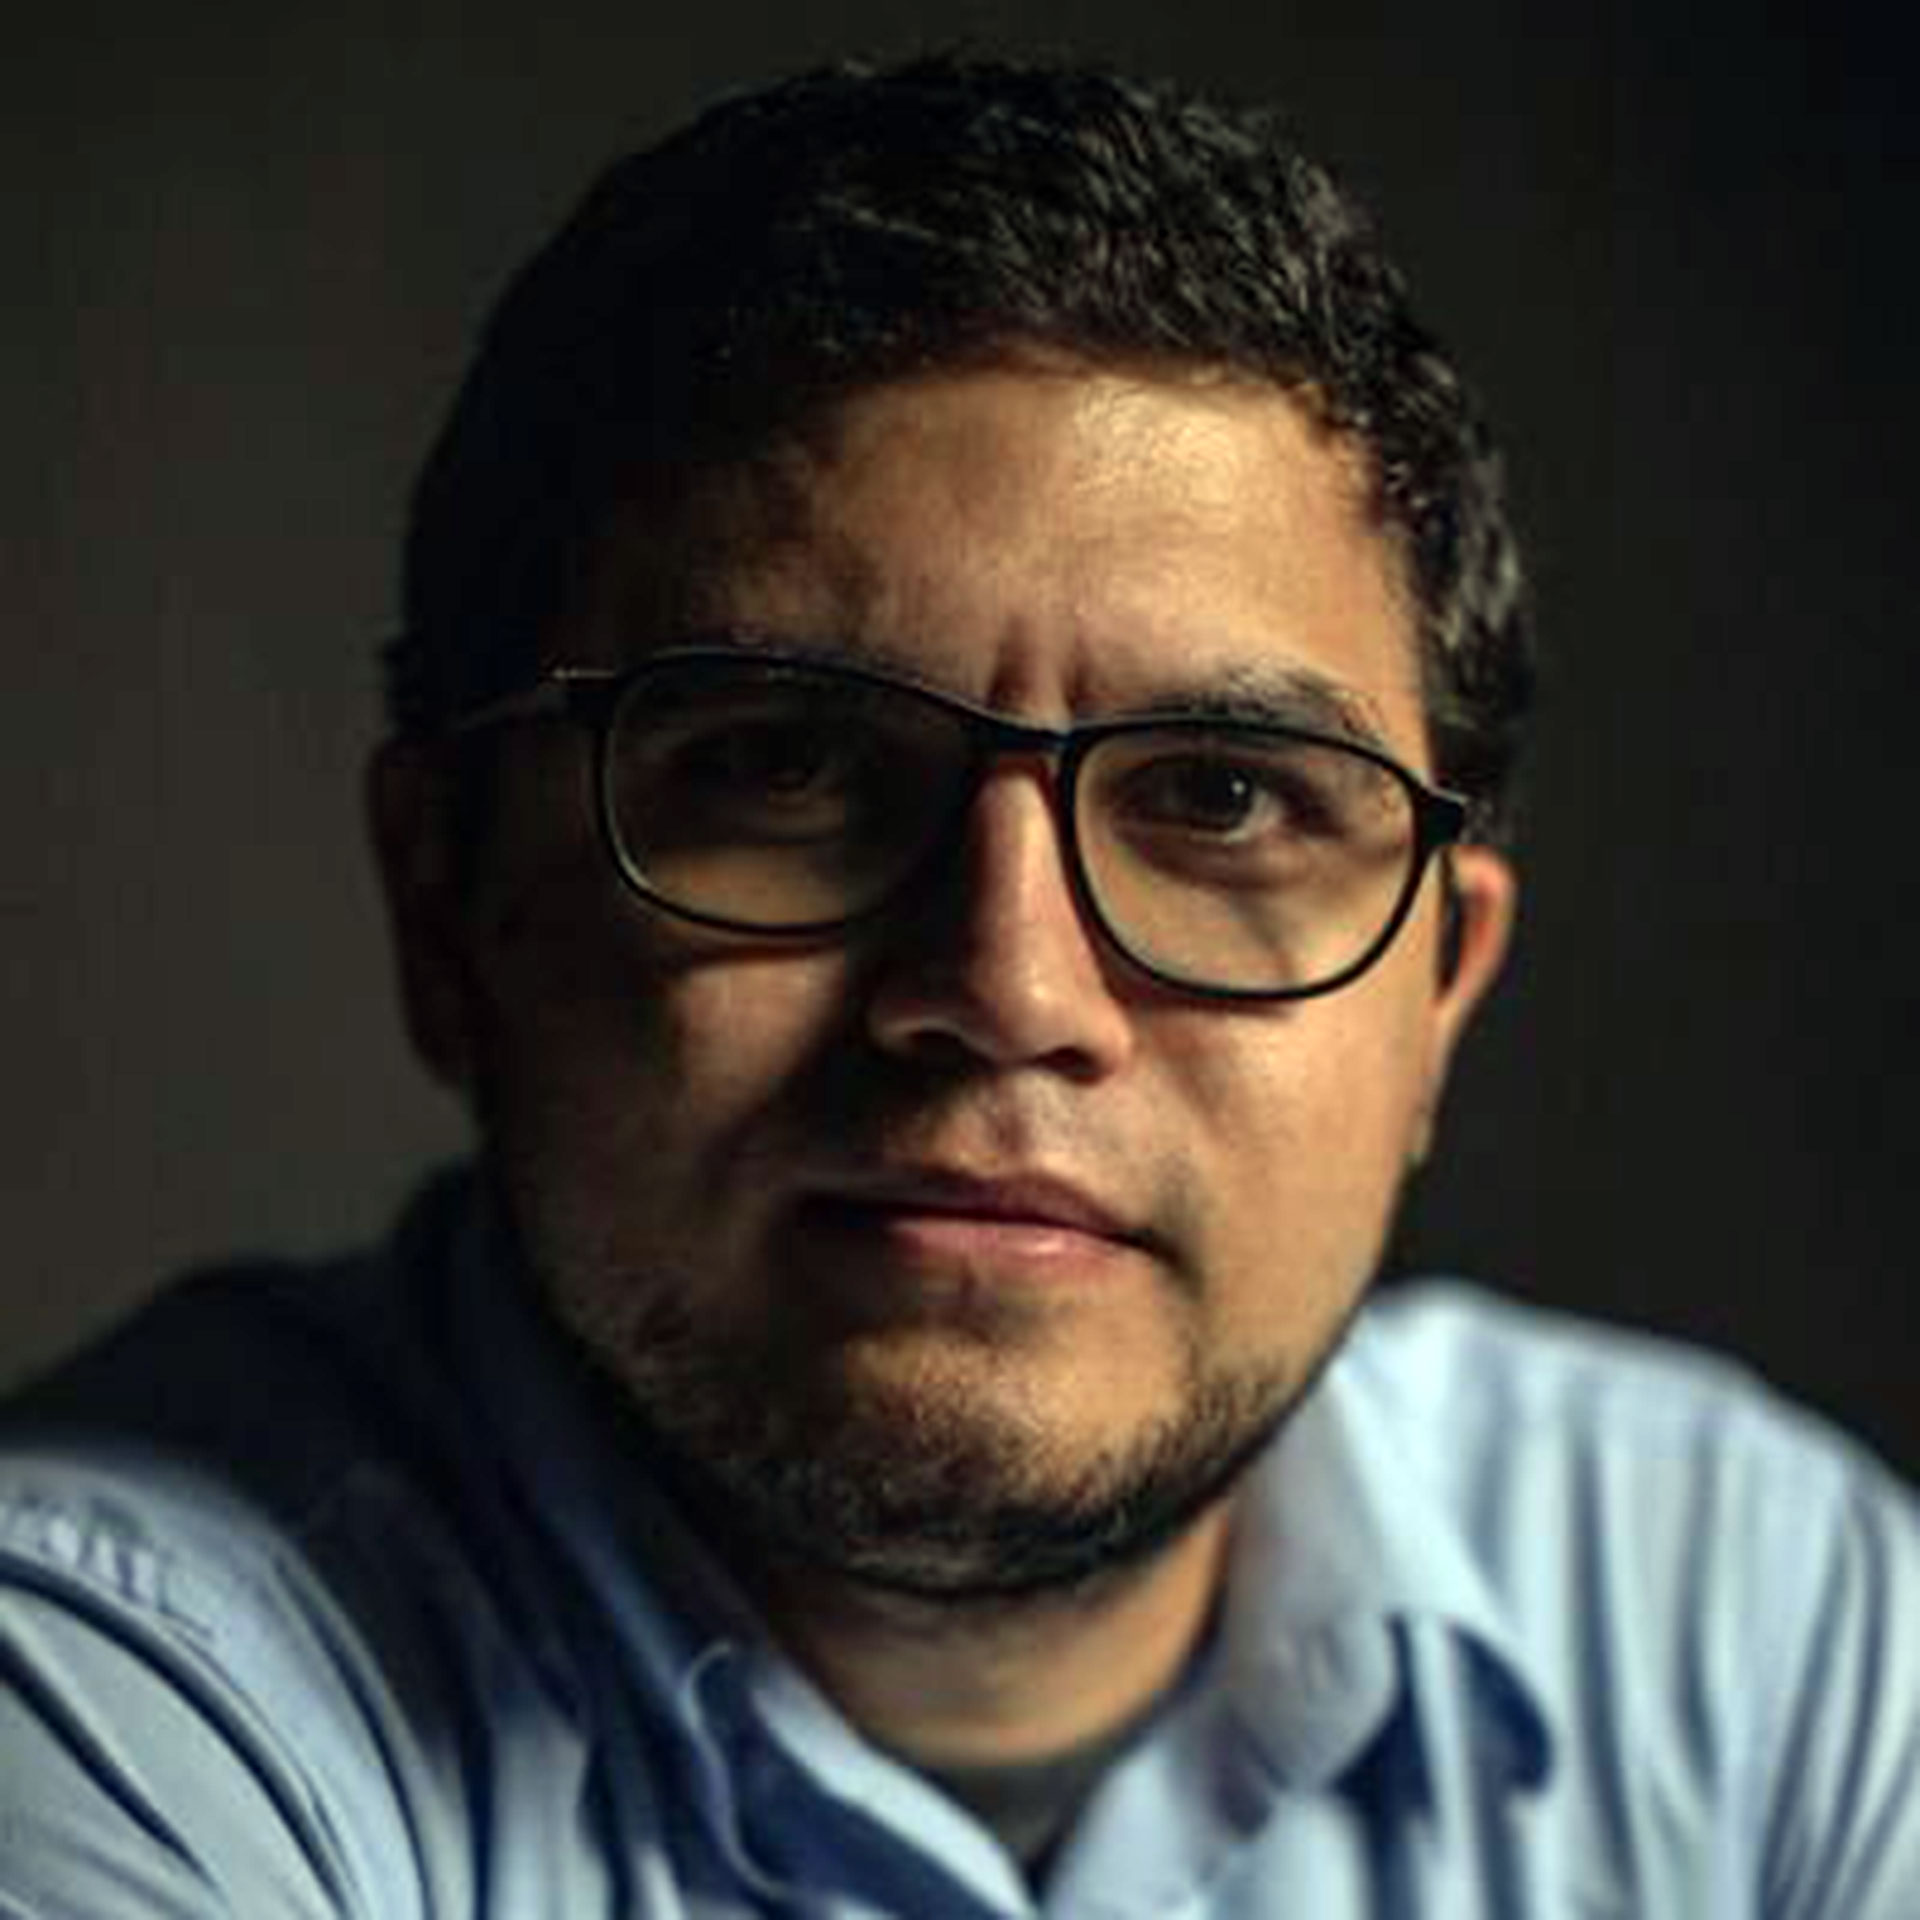 Luis Carlos Diaz, periodista y ciberactivista venezolano, fue detenido en 2019 por explicar en sus redes sociales cómo actuar ante los apagones que afectaron al país en marzo de ese año